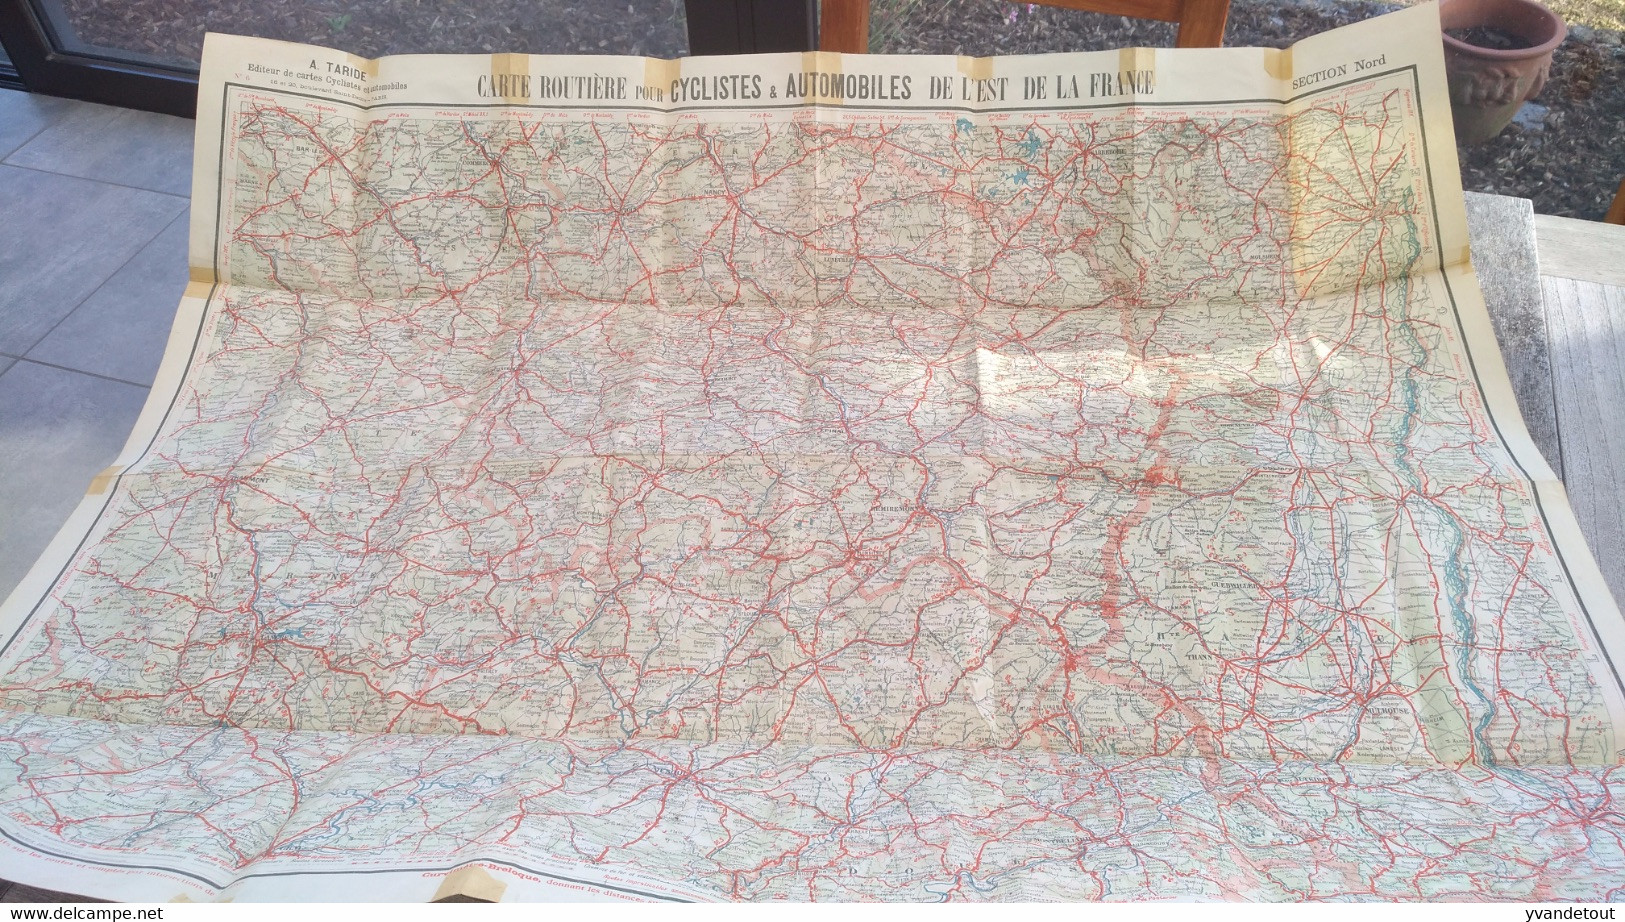 Carte Taride Papier. Carte Routière Pour Cyclistes & Automobiles . Section Nord De La France - Roadmaps